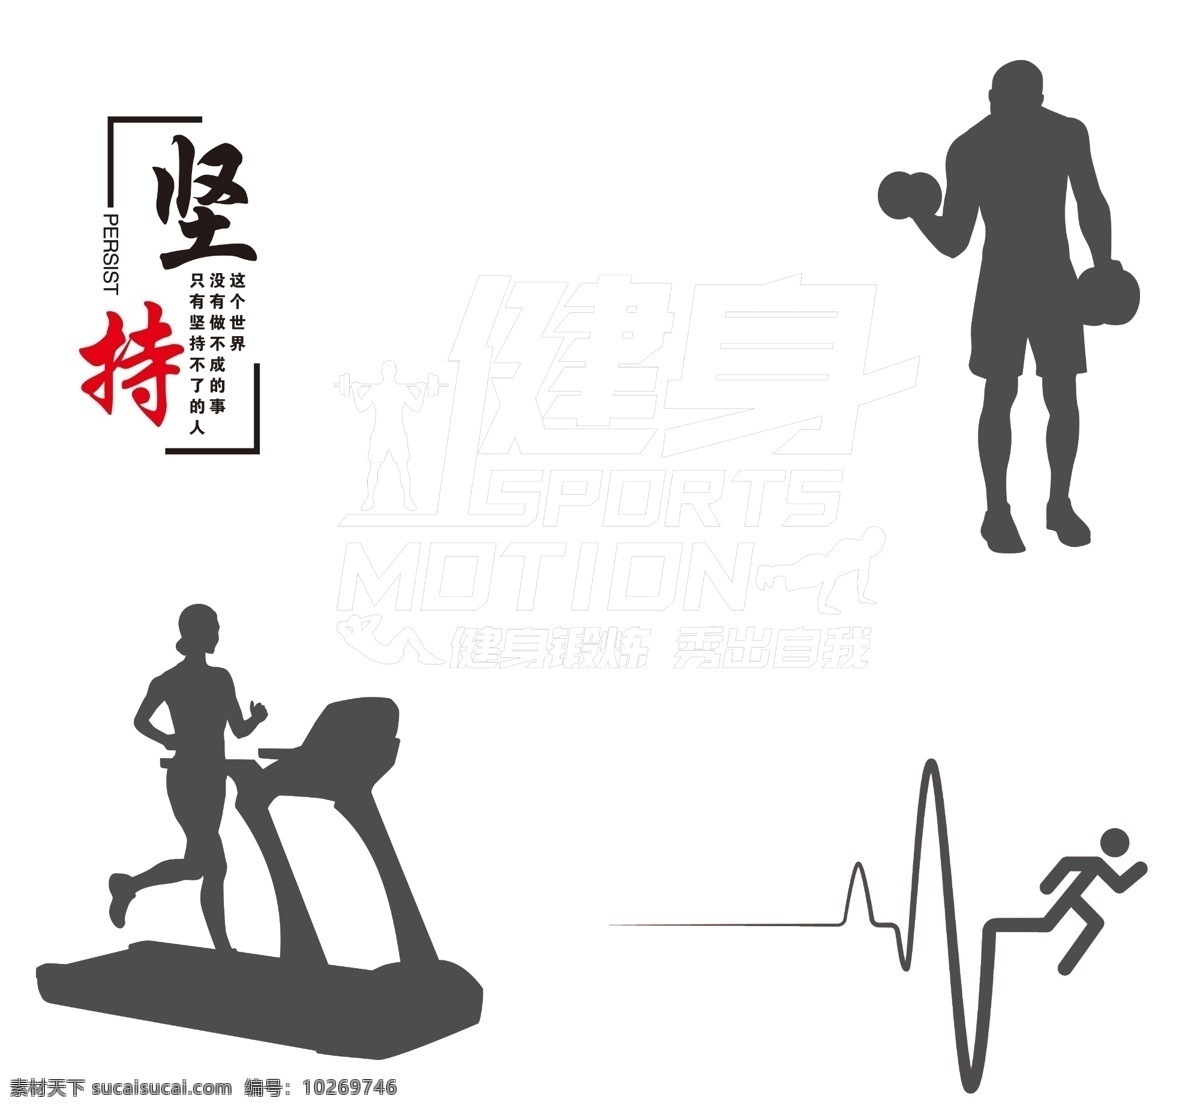 运动室健身房 形象墙 活动室 运动室墙面 健身房装饰 健身房文化墙 健身标语 分层